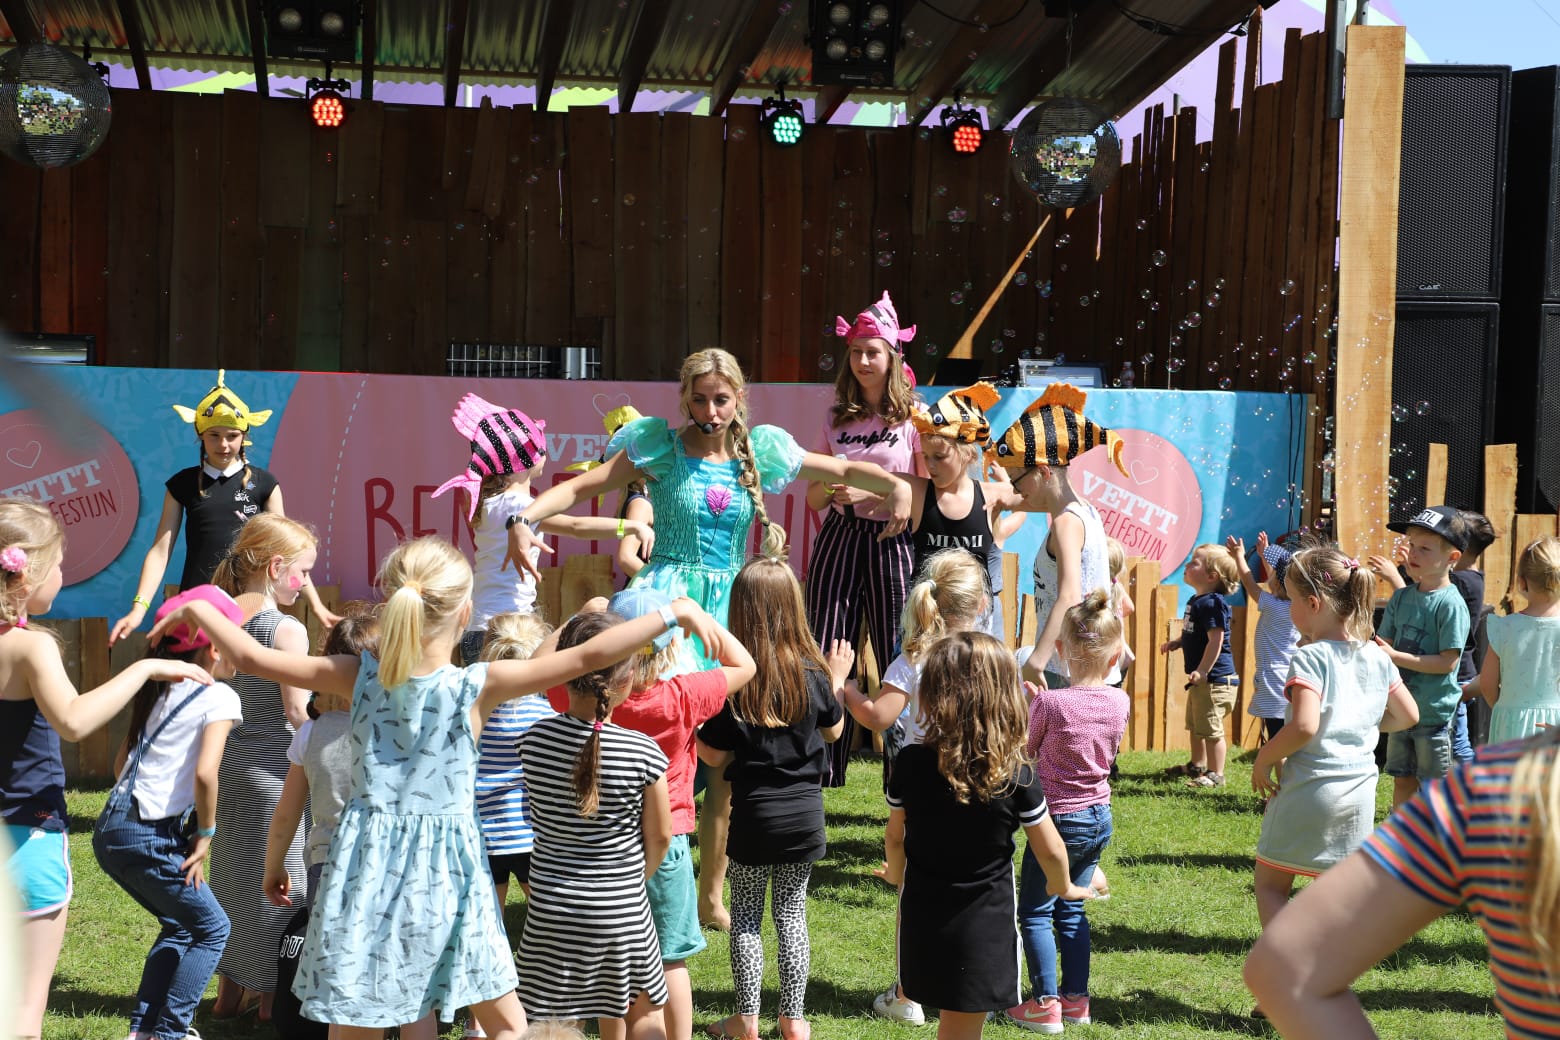 Kinder evenementen & festivals Nederland overzicht met gezin of familie - Reisliefde